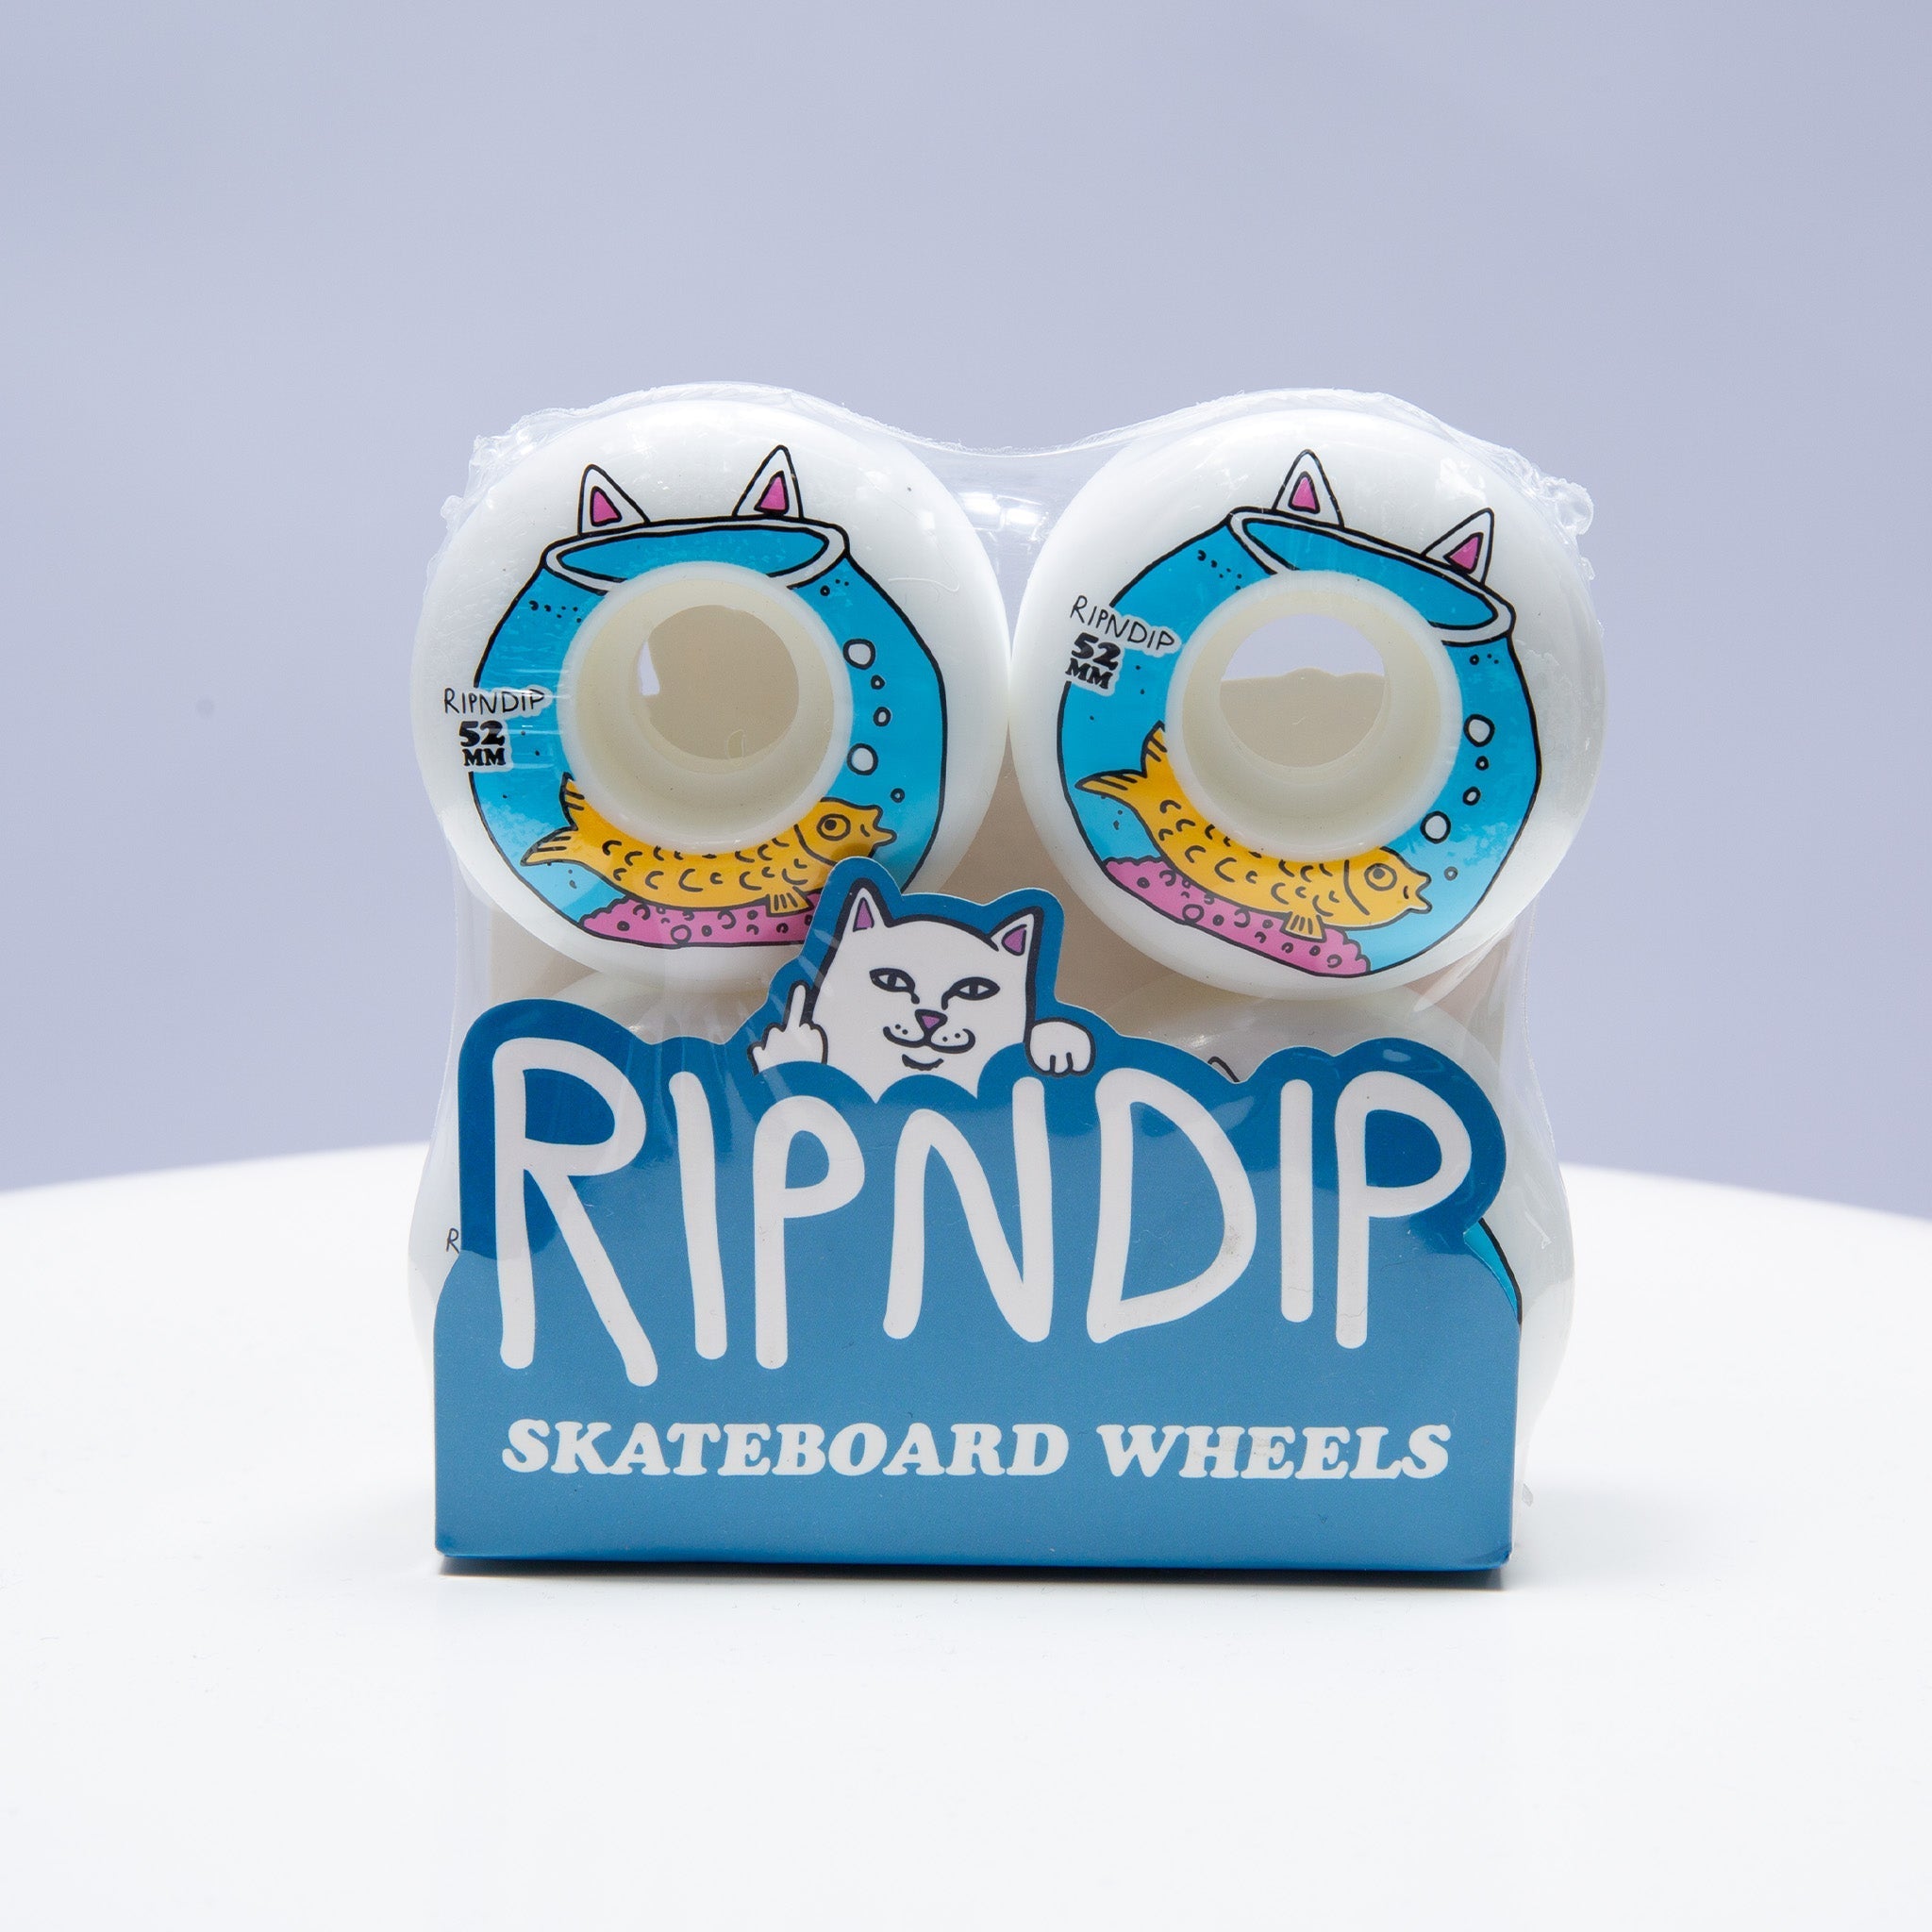 Finding Nermio Skate Wheels (White)